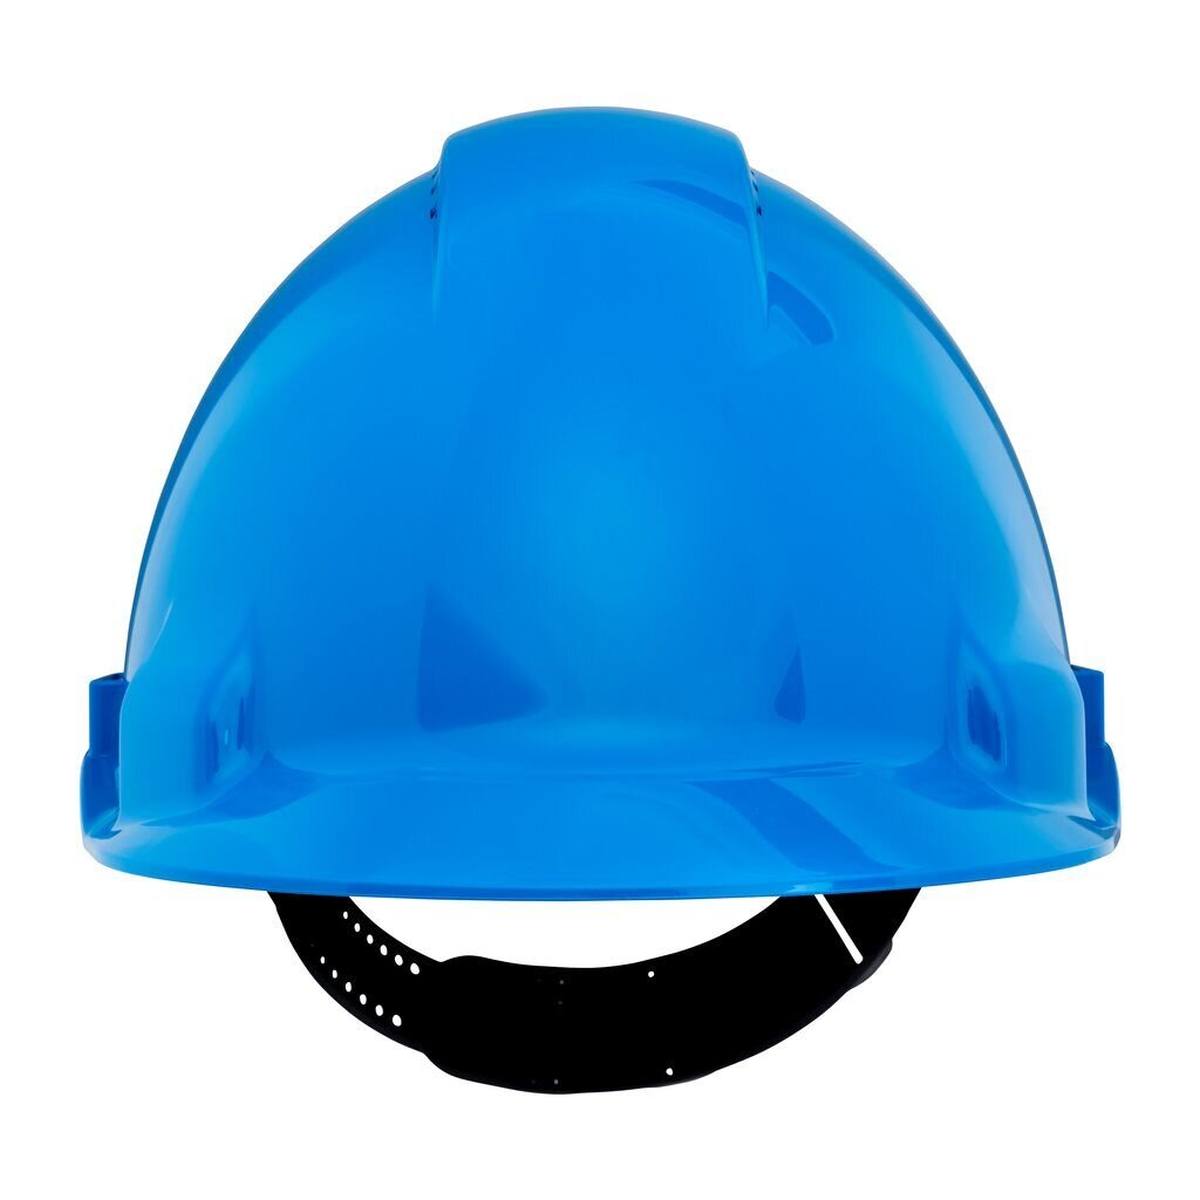 elmetto di sicurezza 3M G3000 G30CUB di colore blu, ventilato, con uvicatore, pinlock e fascia antisudore in plastica